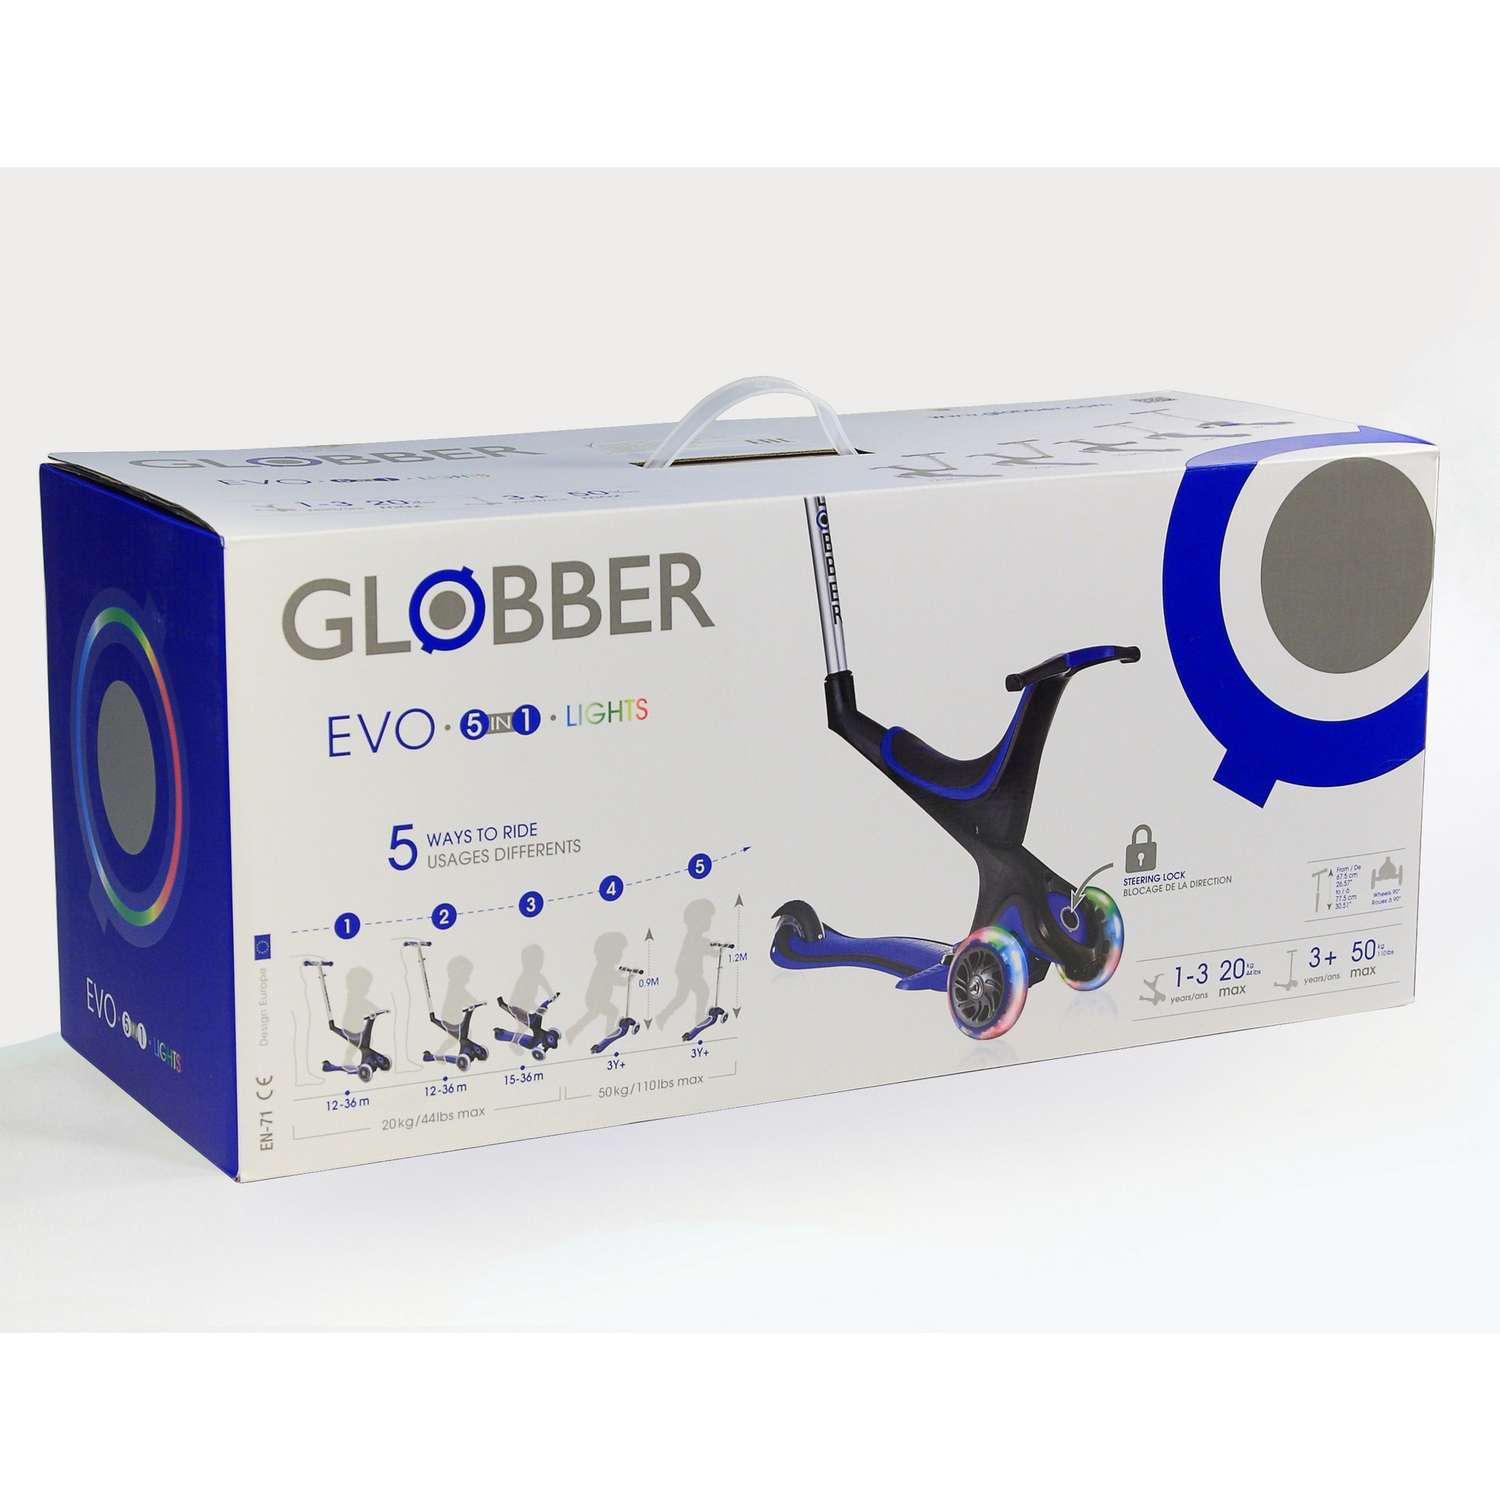 Самокат Globber Evo 5 в 1 Lights Синий 457-100 - фото 2